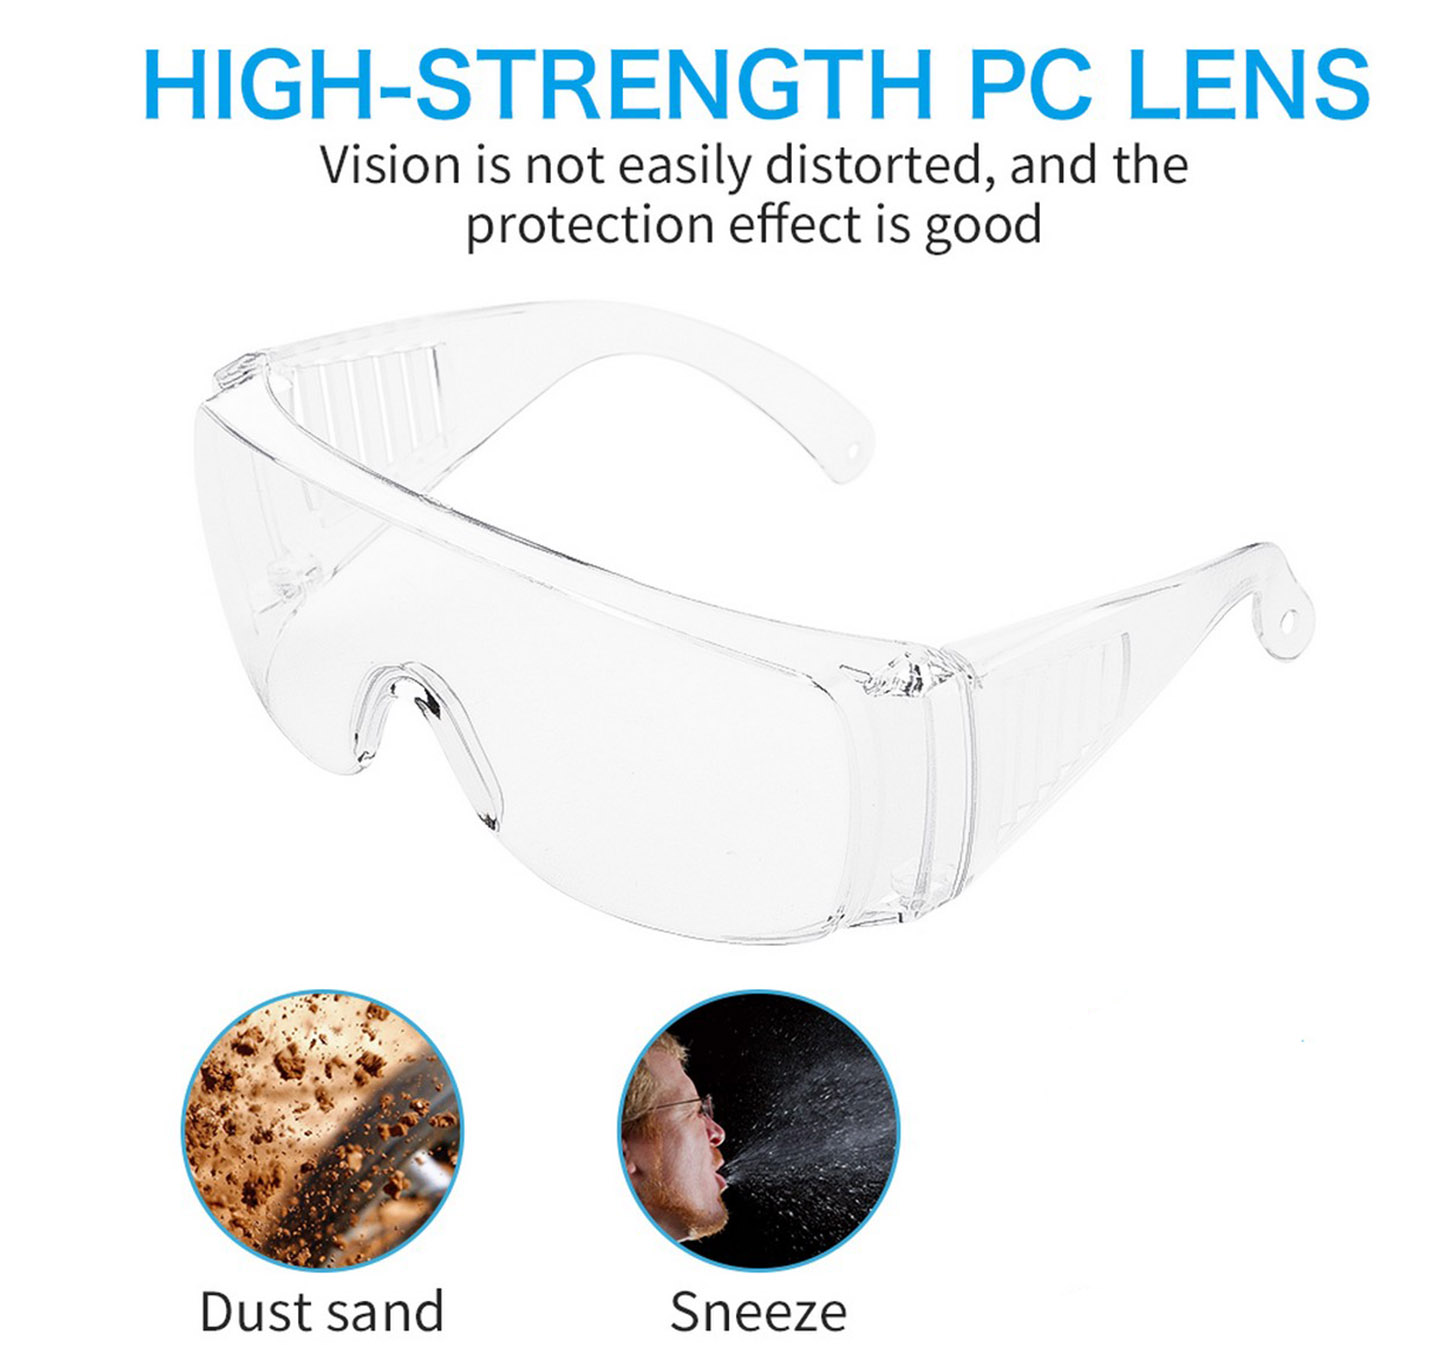 ochrana očí před virem - brýle